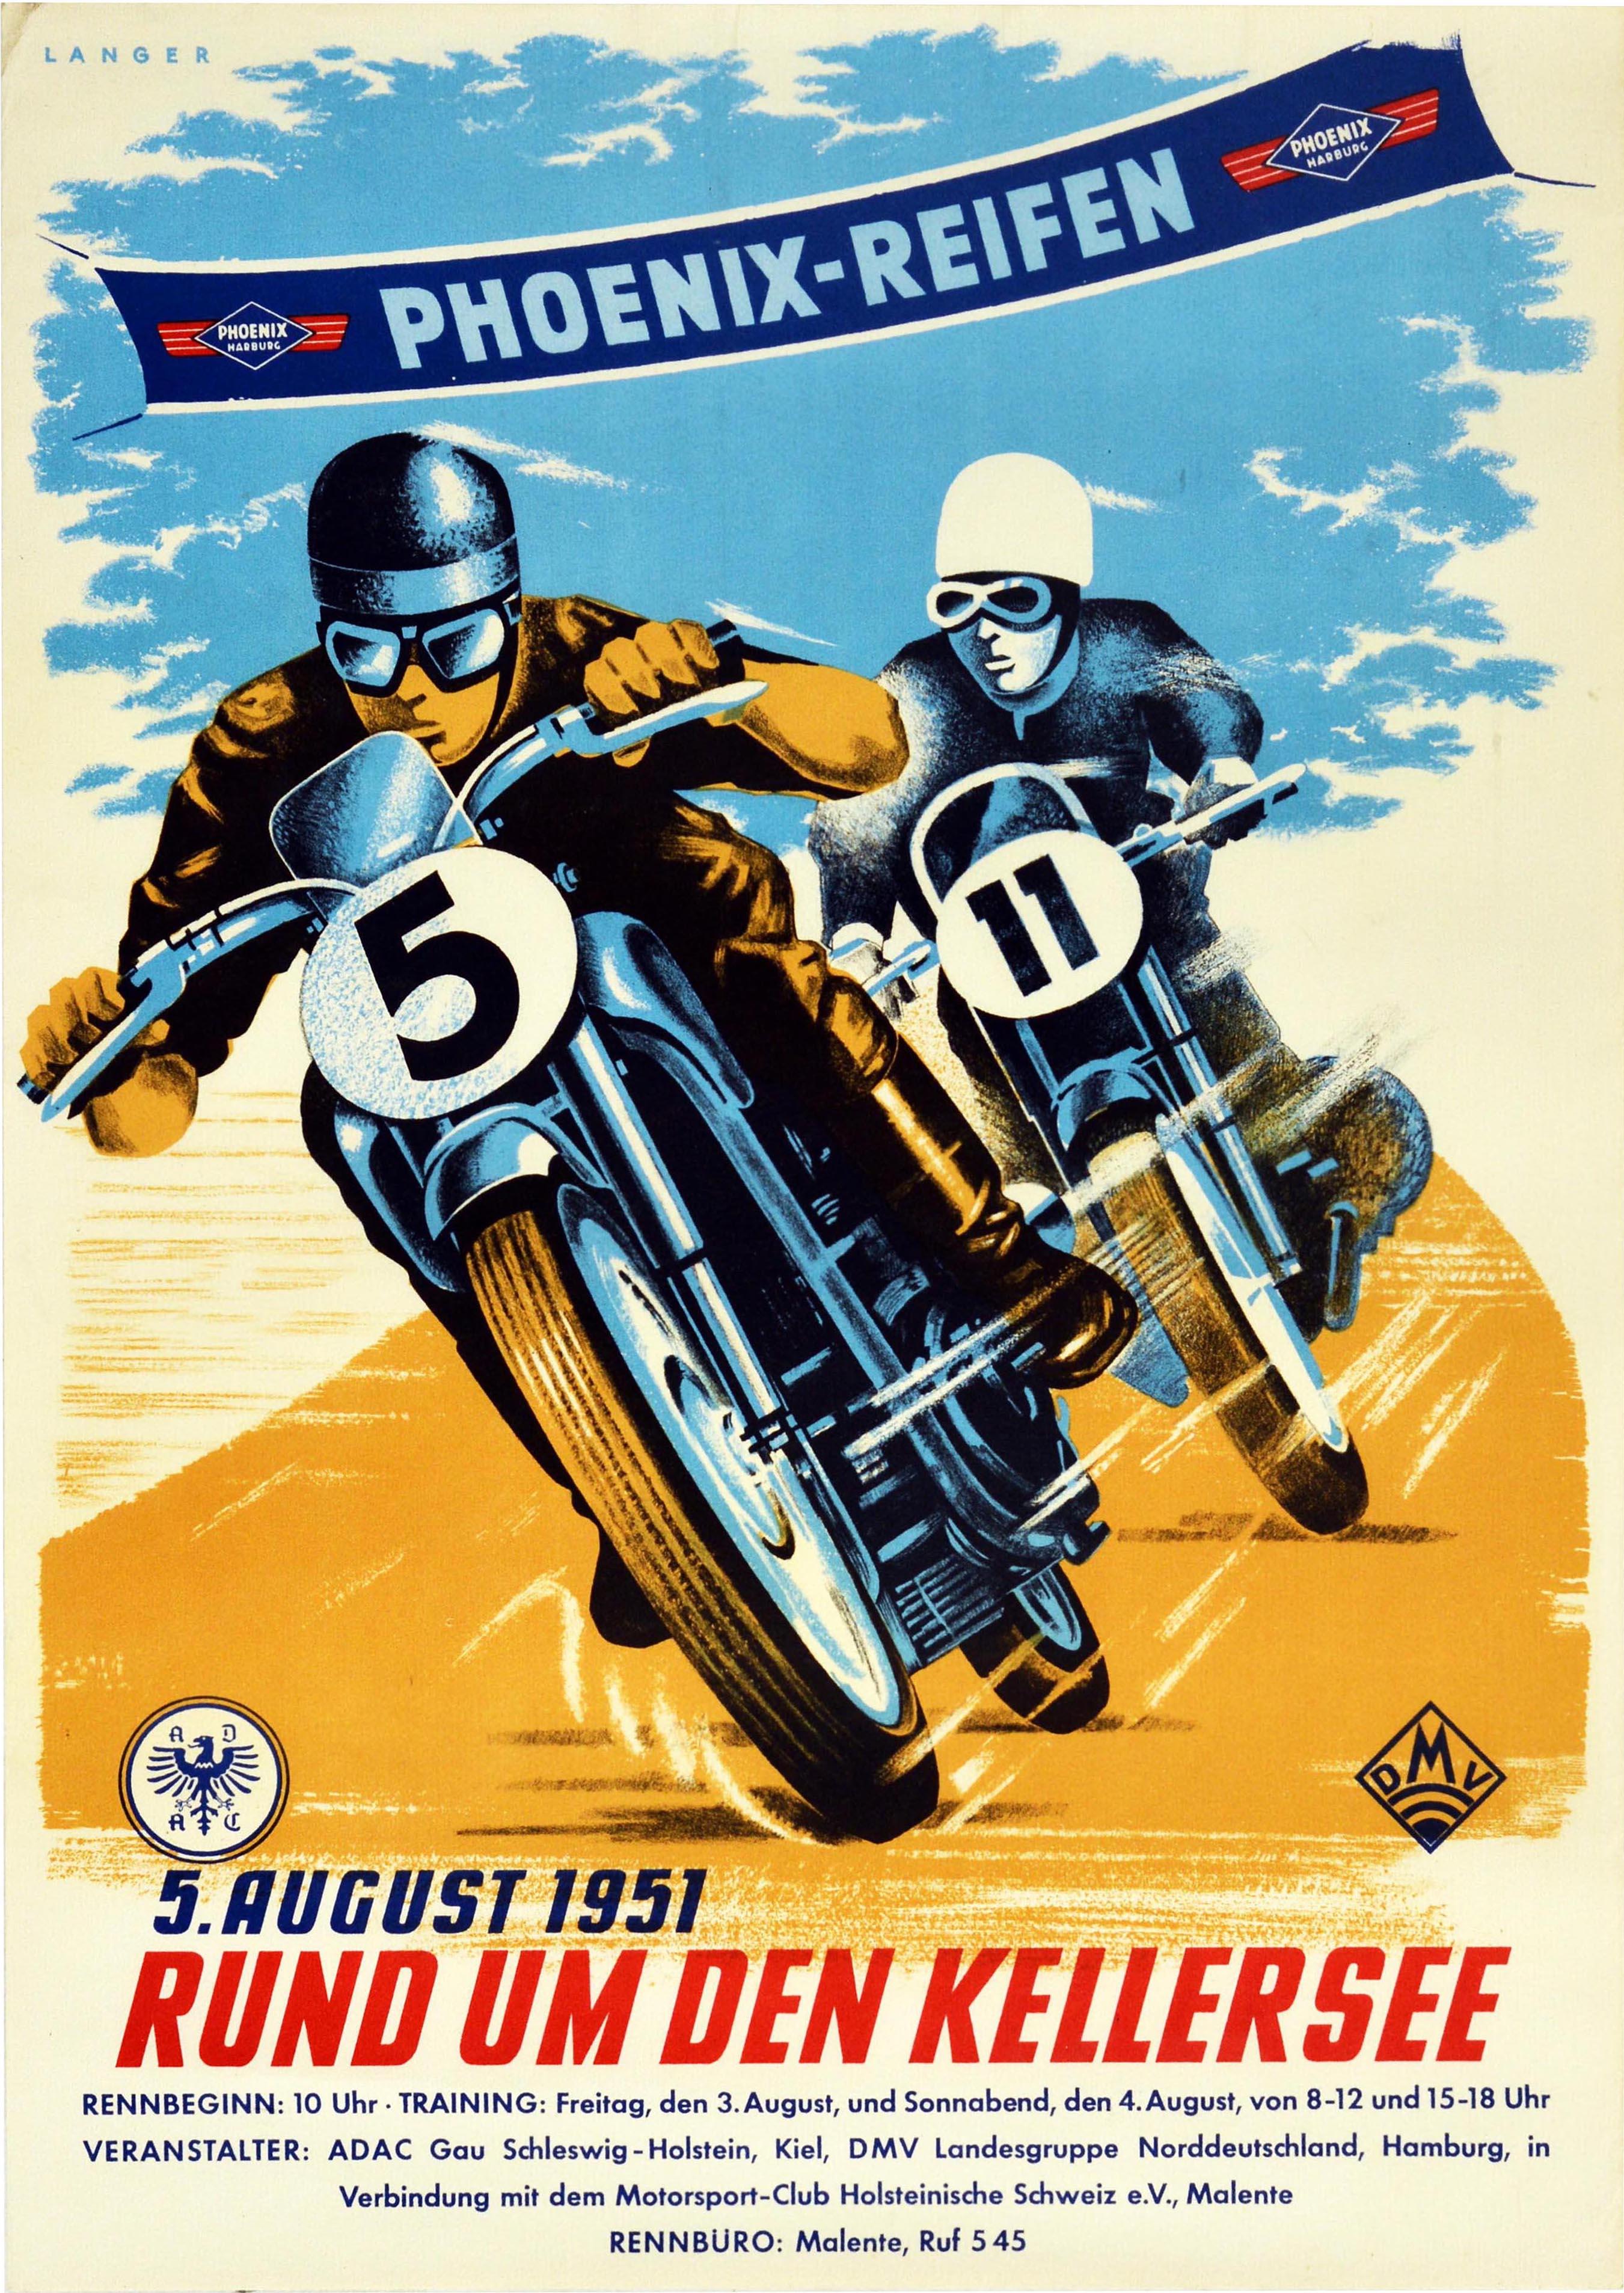 Unknown Print - Original Vintage Poster Kellersee Lake Phoenix Reifen Tires Motorcycle Race Art